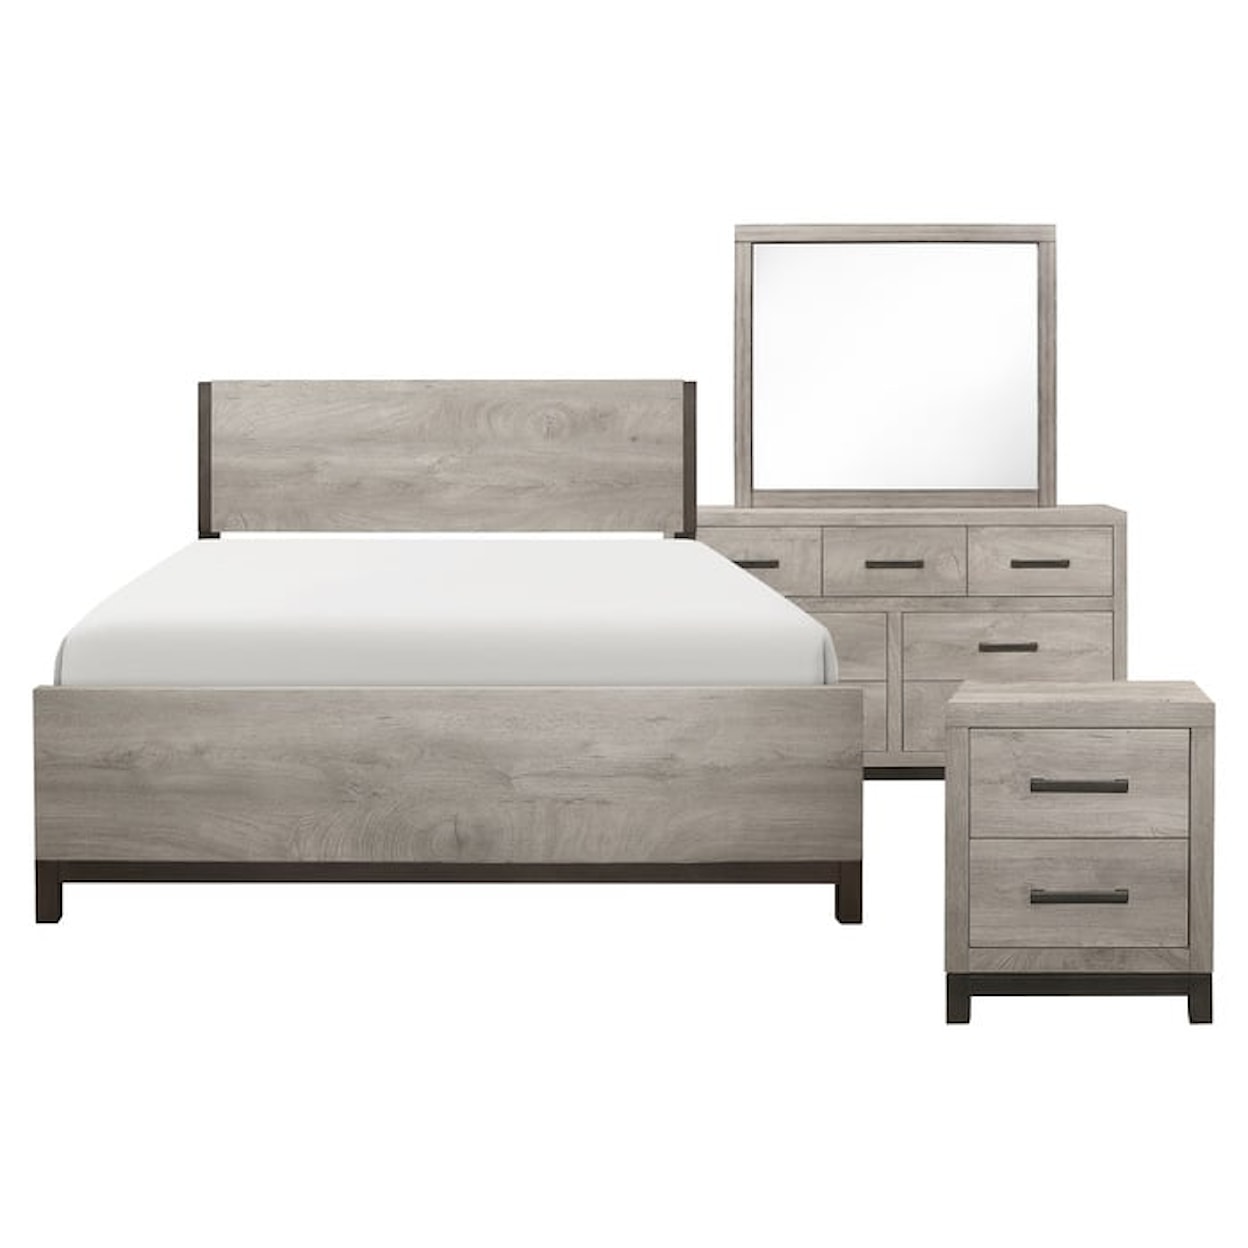 Homelegance Furniture Zephyr 4-Piece Queen Bedroom Set